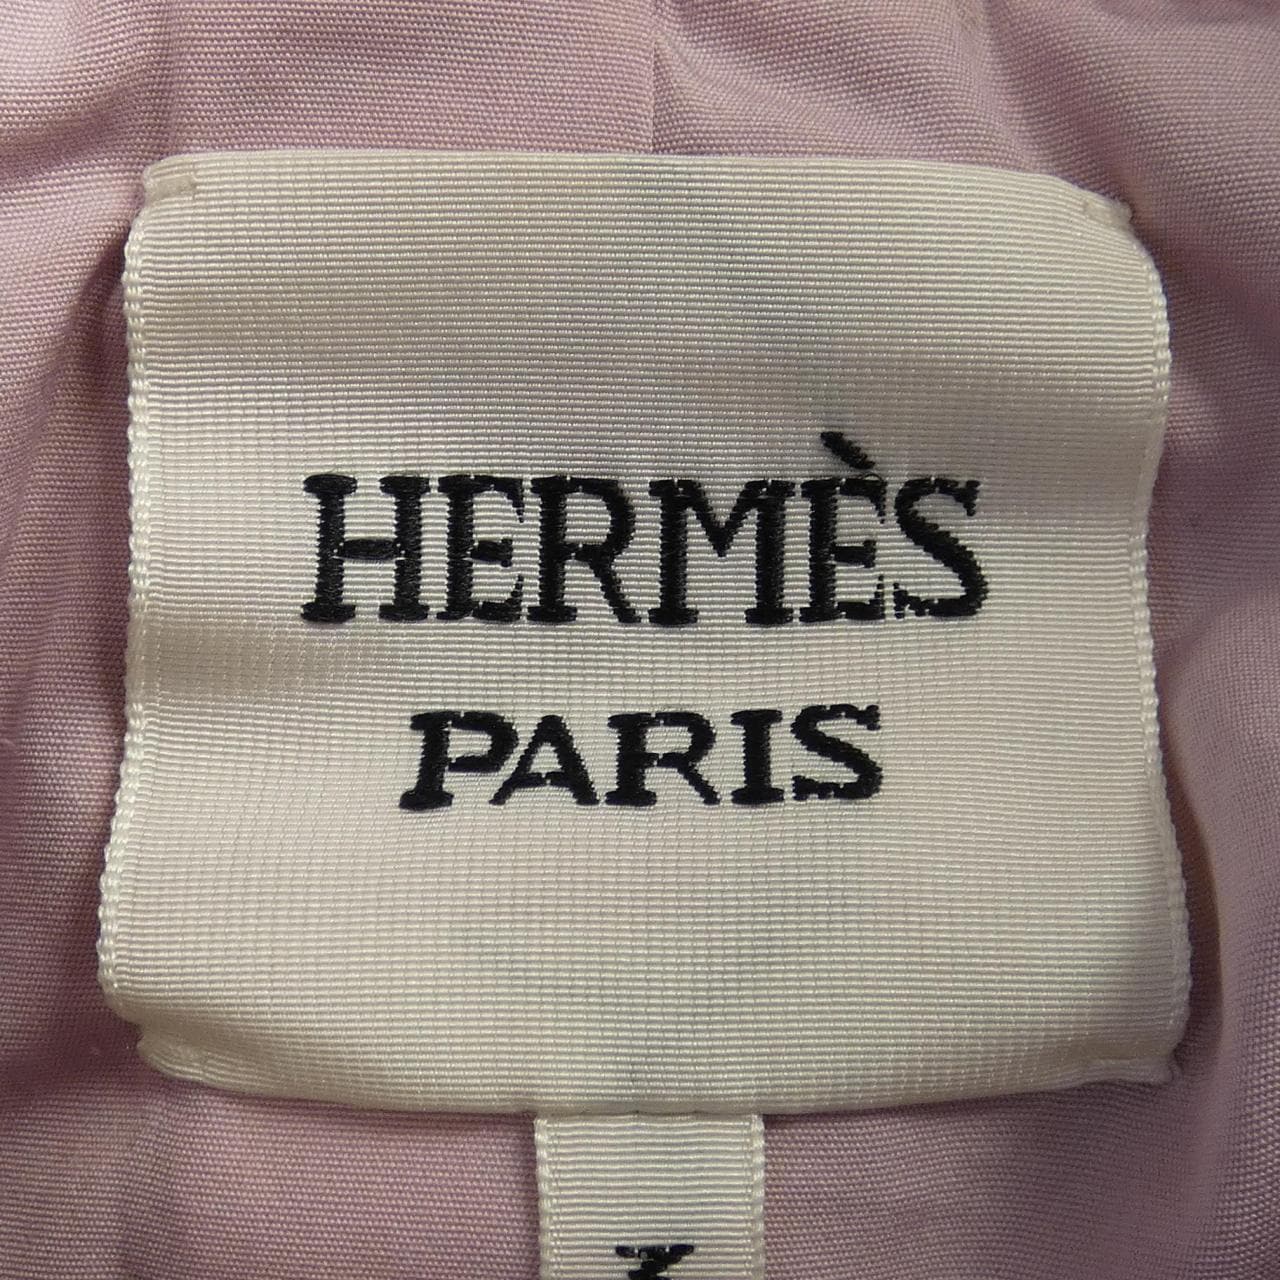 HERMES HERMES Leather Jacket